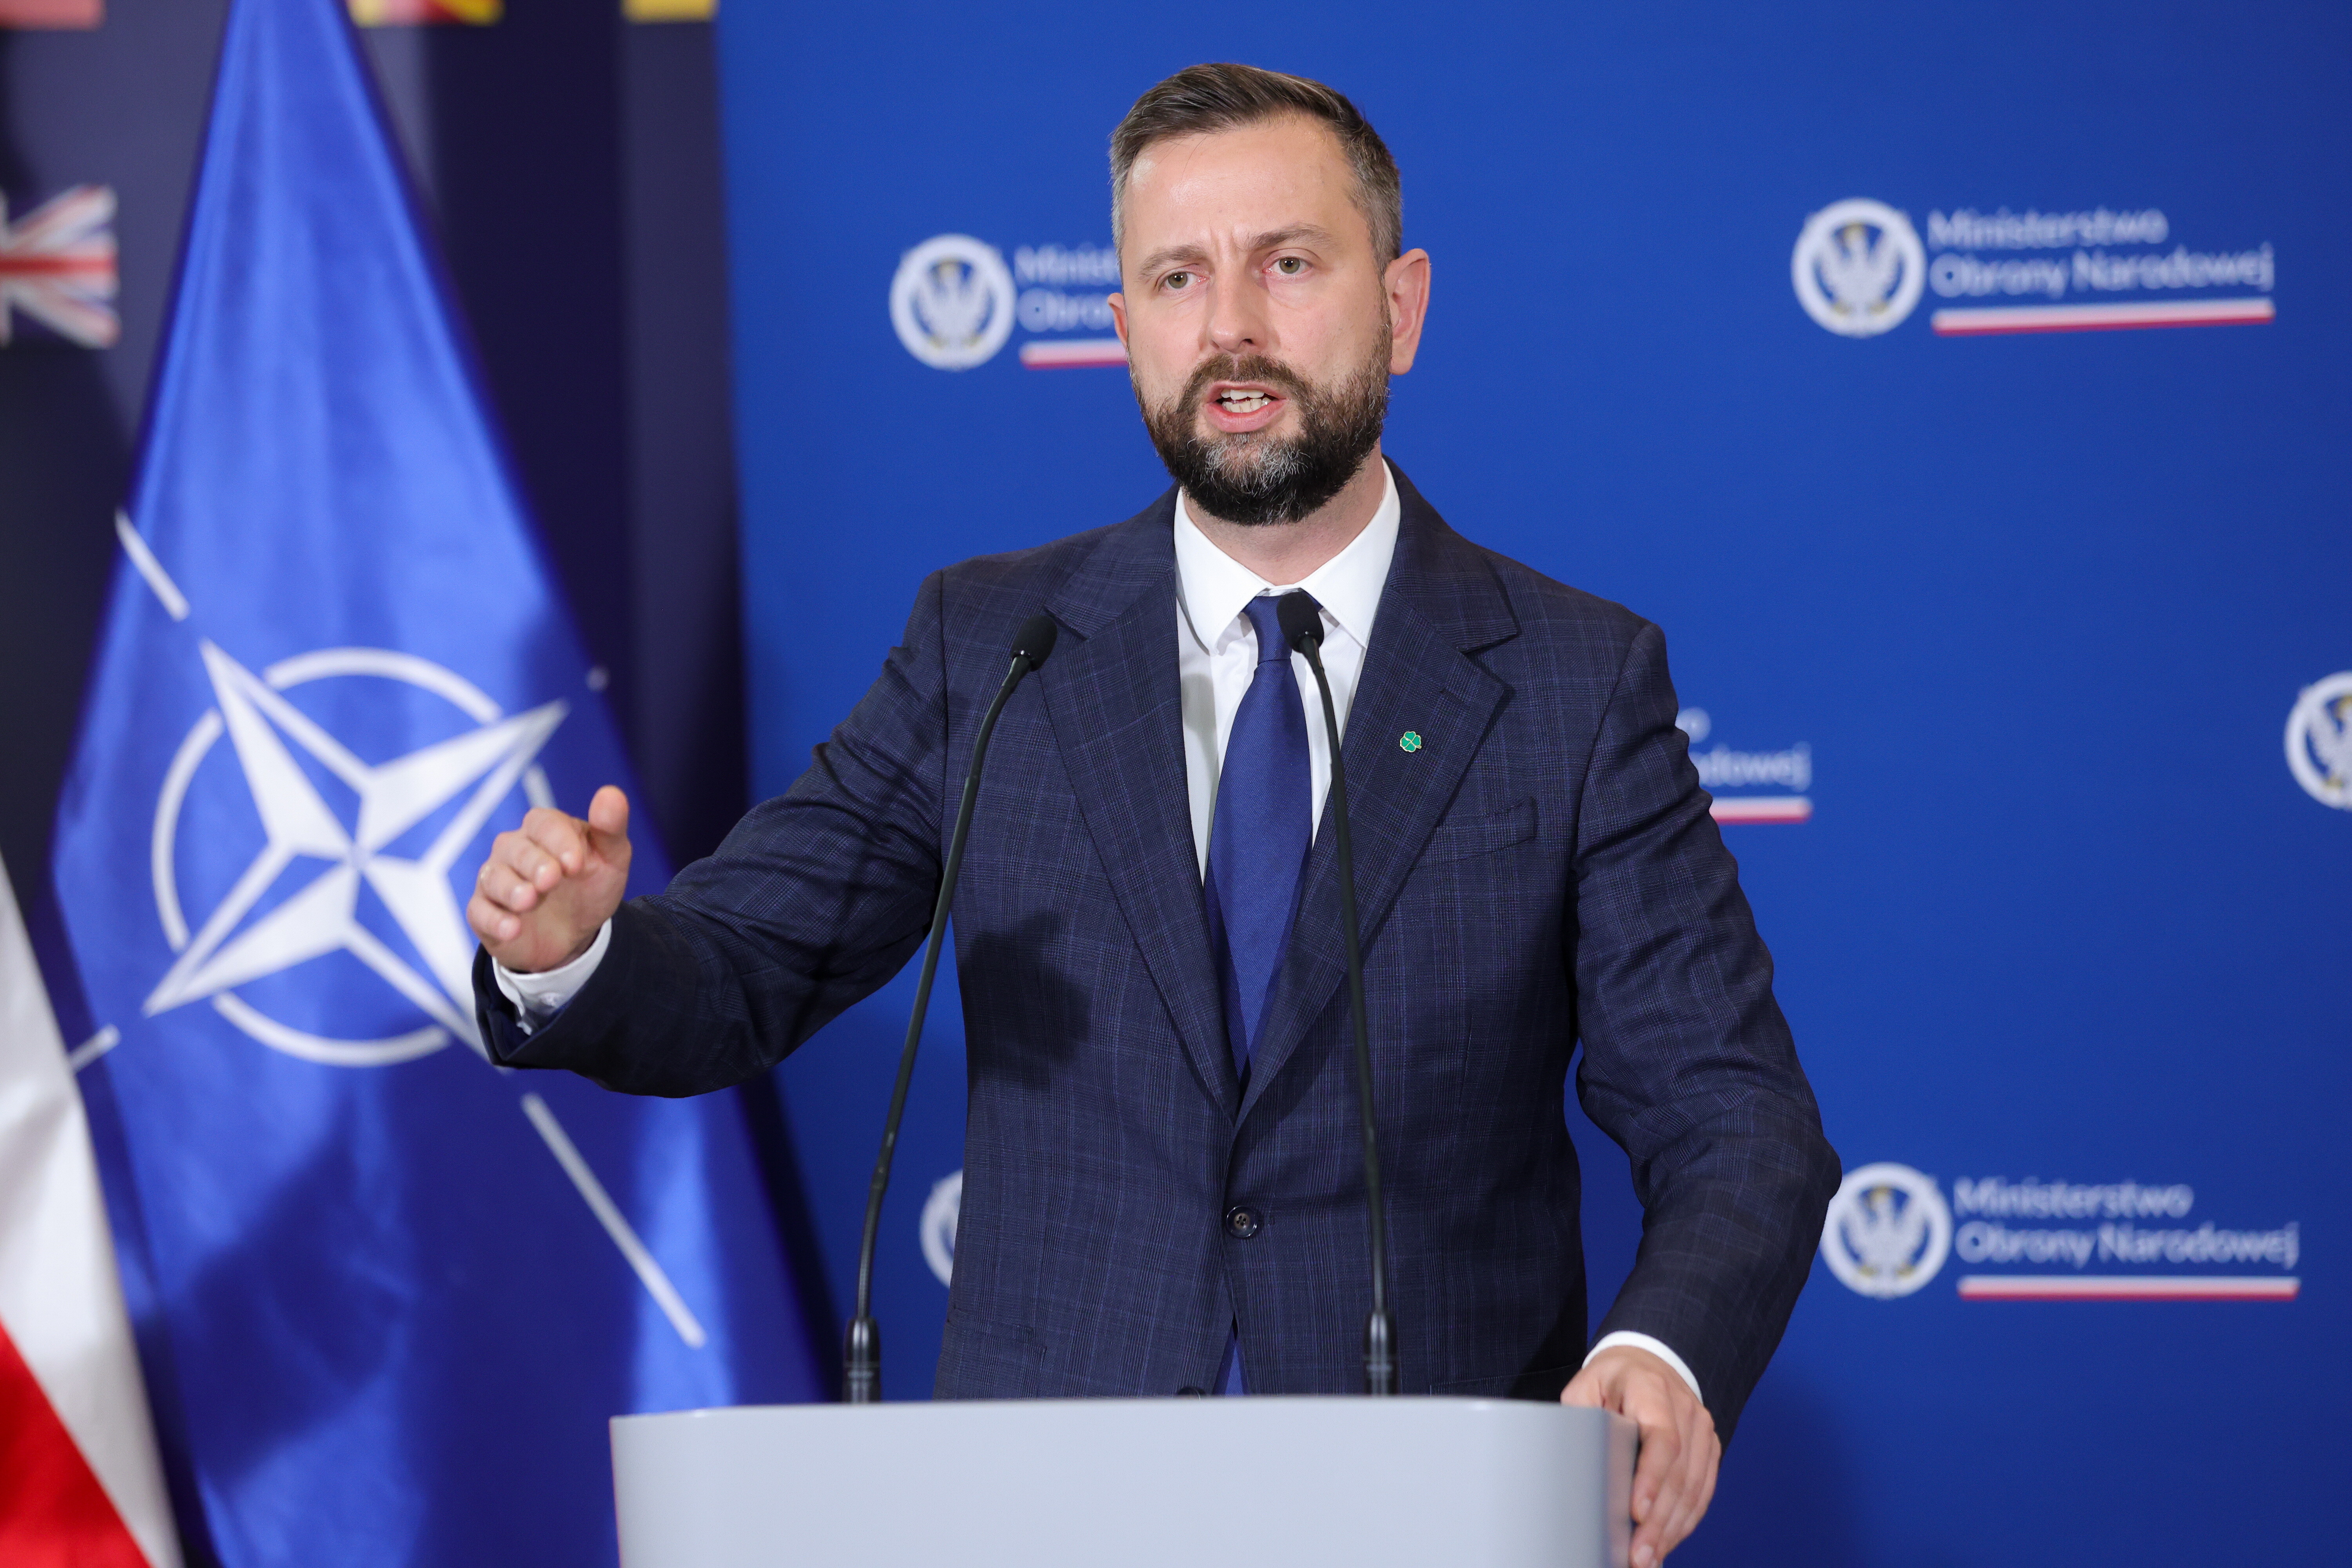 Голова Міністерства національної оборони Владислав Косіняк-Камиш. Fot. PAP/Rafał Guz